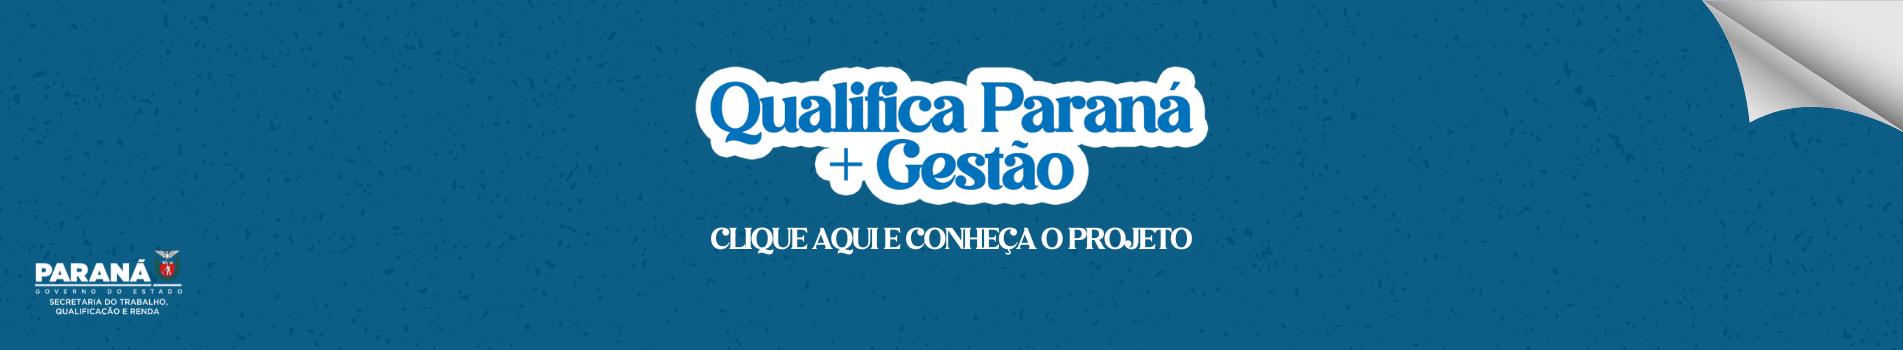 banner qualifica paraná + gestão